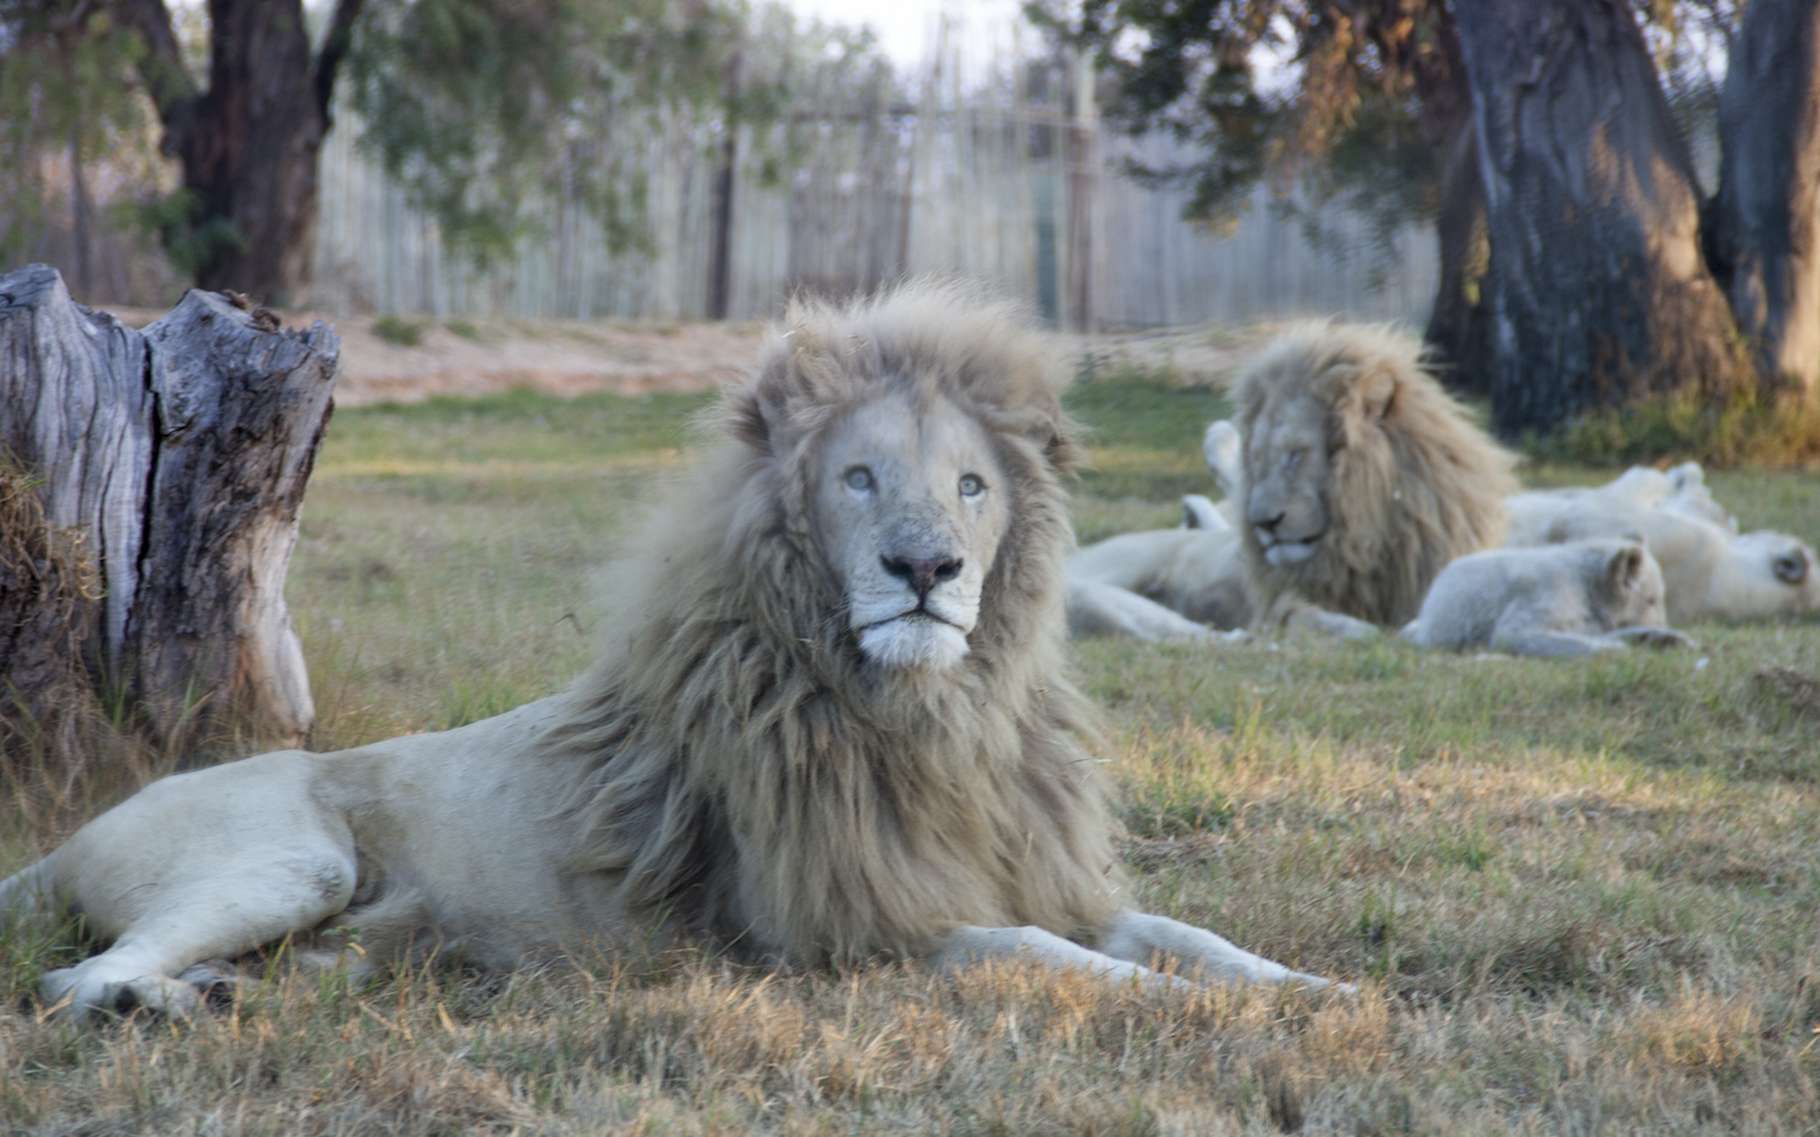 Bêtes de science : les bâillements des lions veulent dire quelque chose